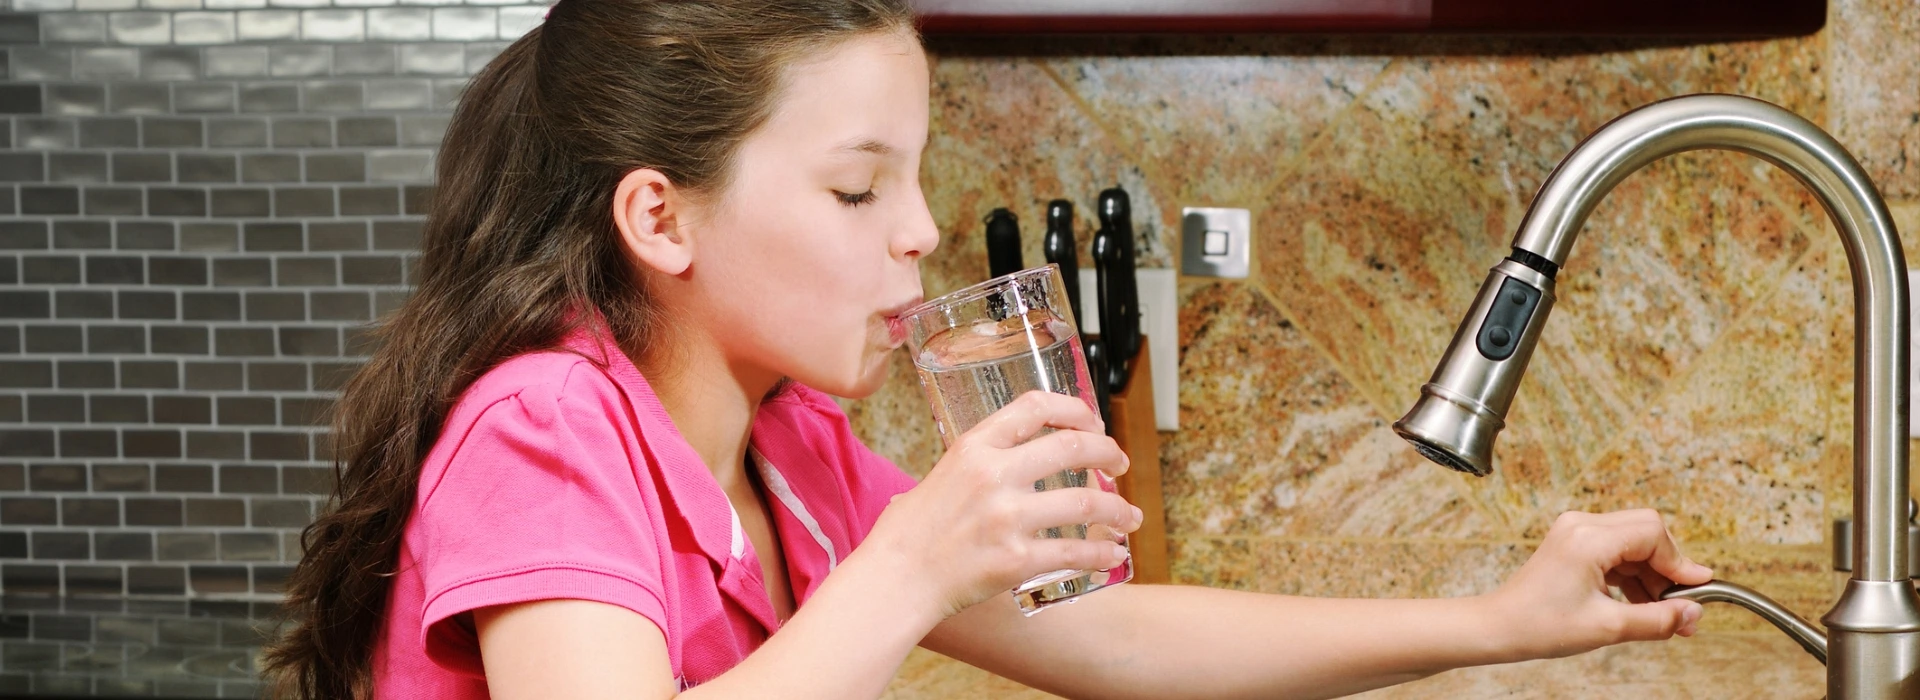 dziewczynka pijąca wodę z kranu